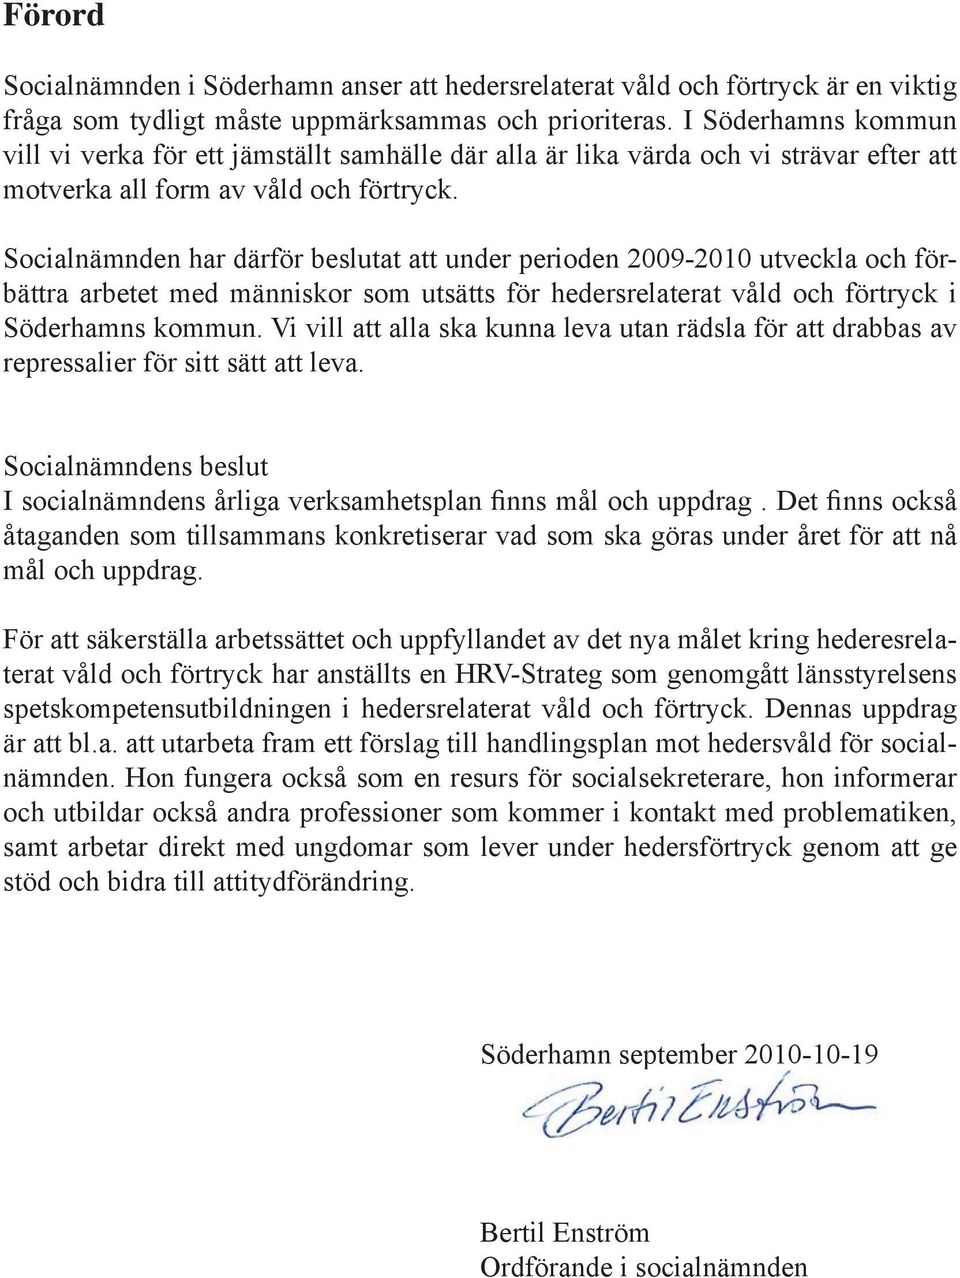 Socialnämnden har därför beslutat att under perioden 2009-2010 utveckla och förbättra arbetet med människor som utsätts för hedersrelaterat våld och förtryck i Söderhamns kommun.